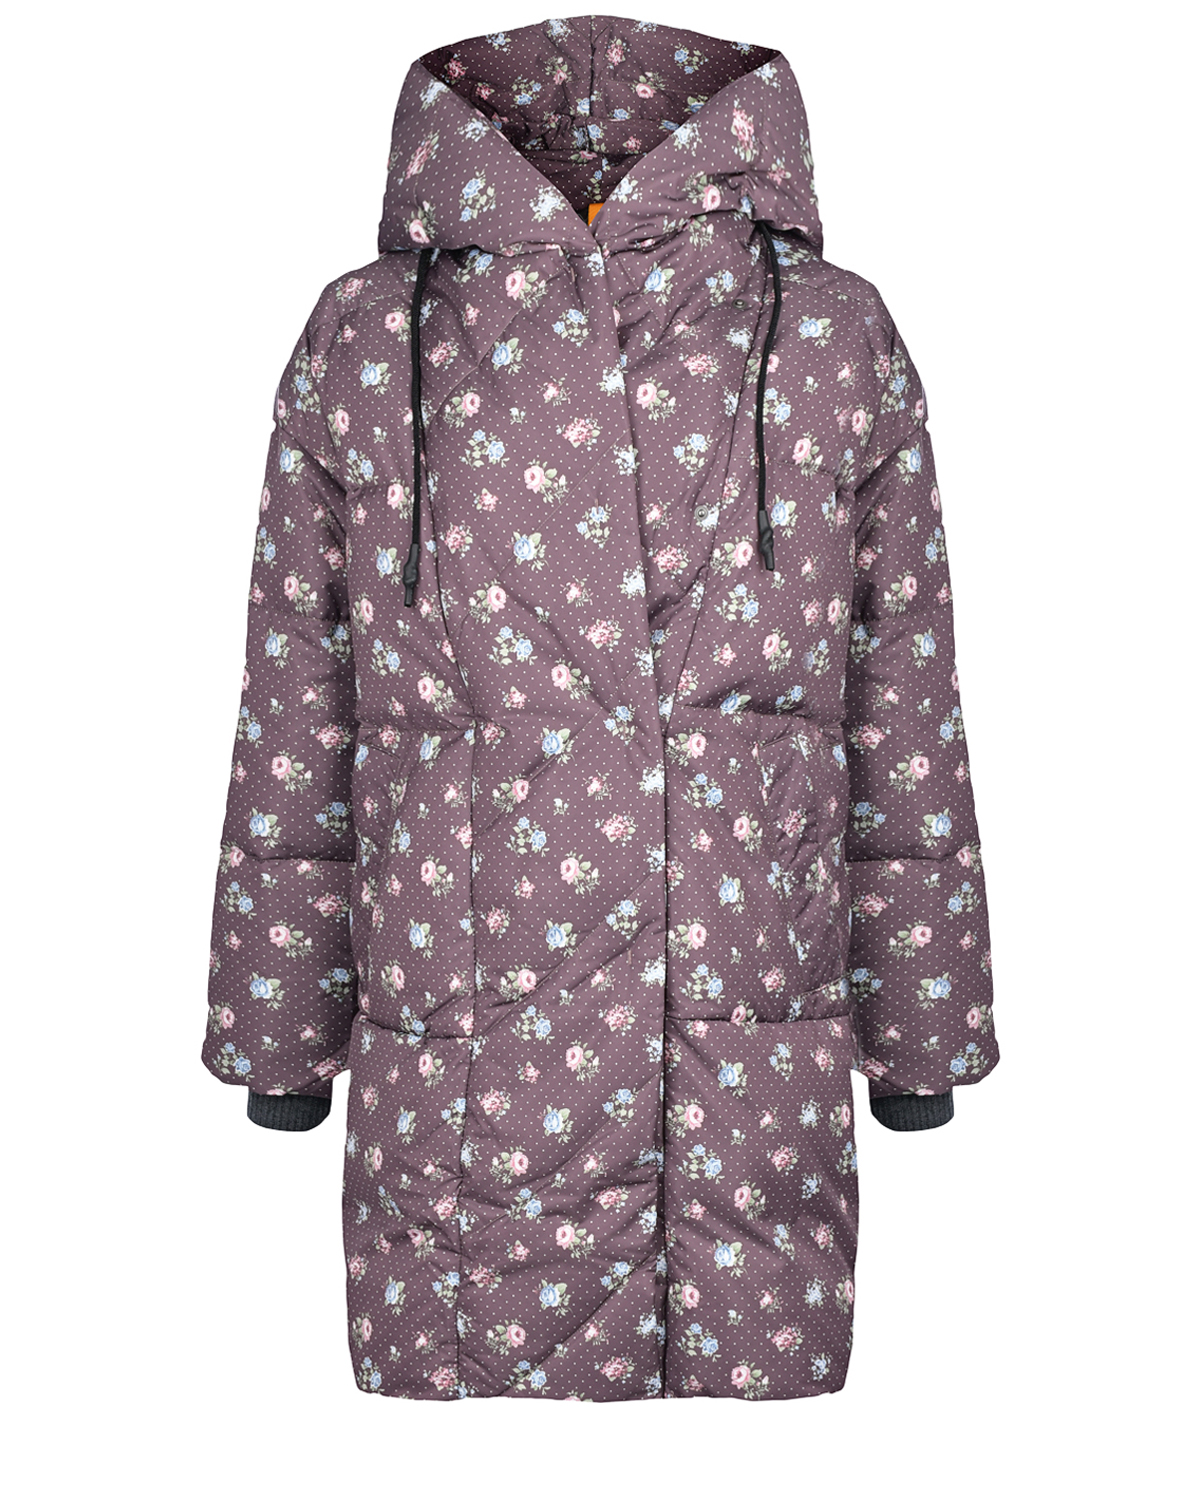 Укороченное пальто-пуховик с принтом "розочки" Naumi, размер 38, цвет бордовый - фото 1